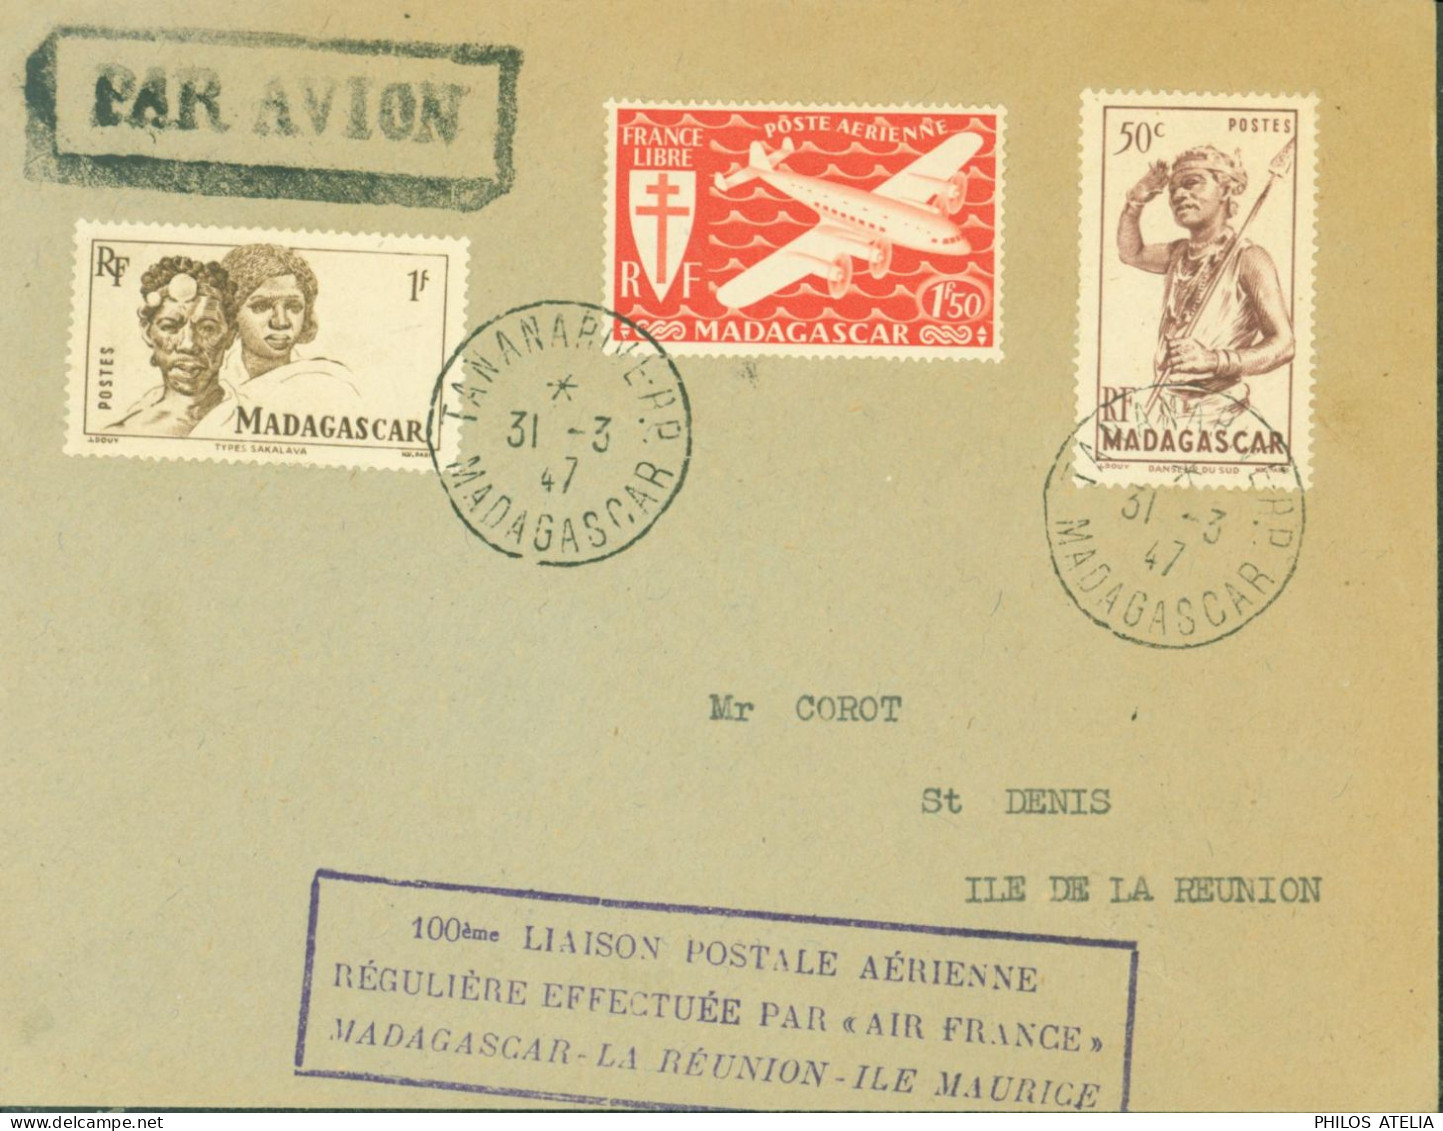 100 Liaison Postale Aérienne Régulière Effectuée Par Air France Madagascar La Réunion Ile Maurice CAD Tananarive 31 3 47 - Posta Aerea